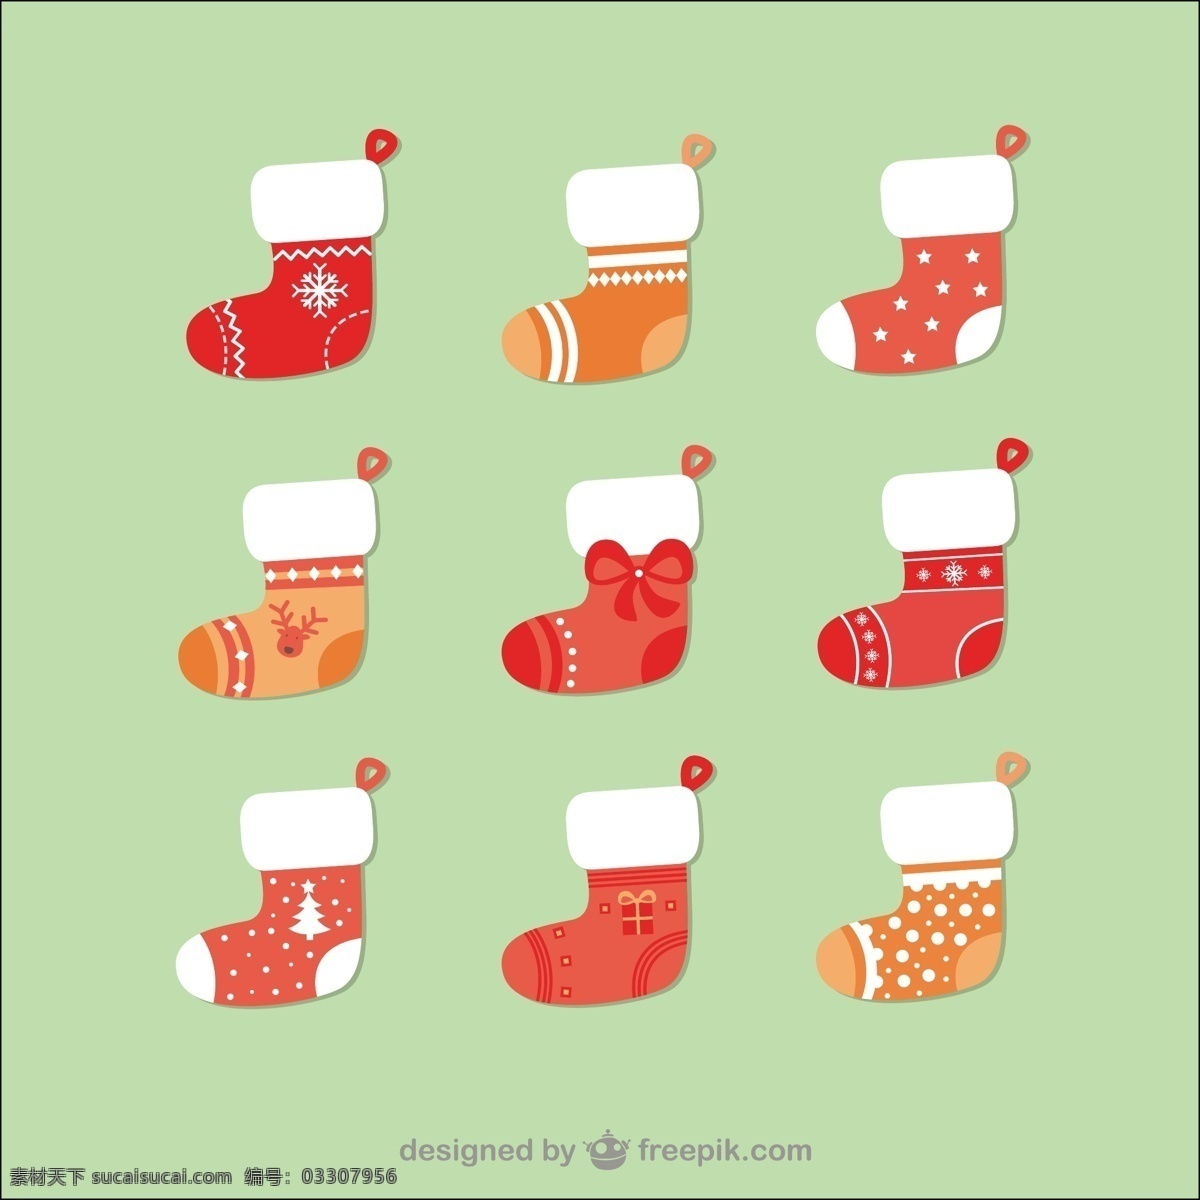 圣诞节 袜子 包 装饰 包装 圣诞礼物 圣诞装饰 圣诞节装饰 圣诞装饰品 圣诞袜 圣诞树 黄色